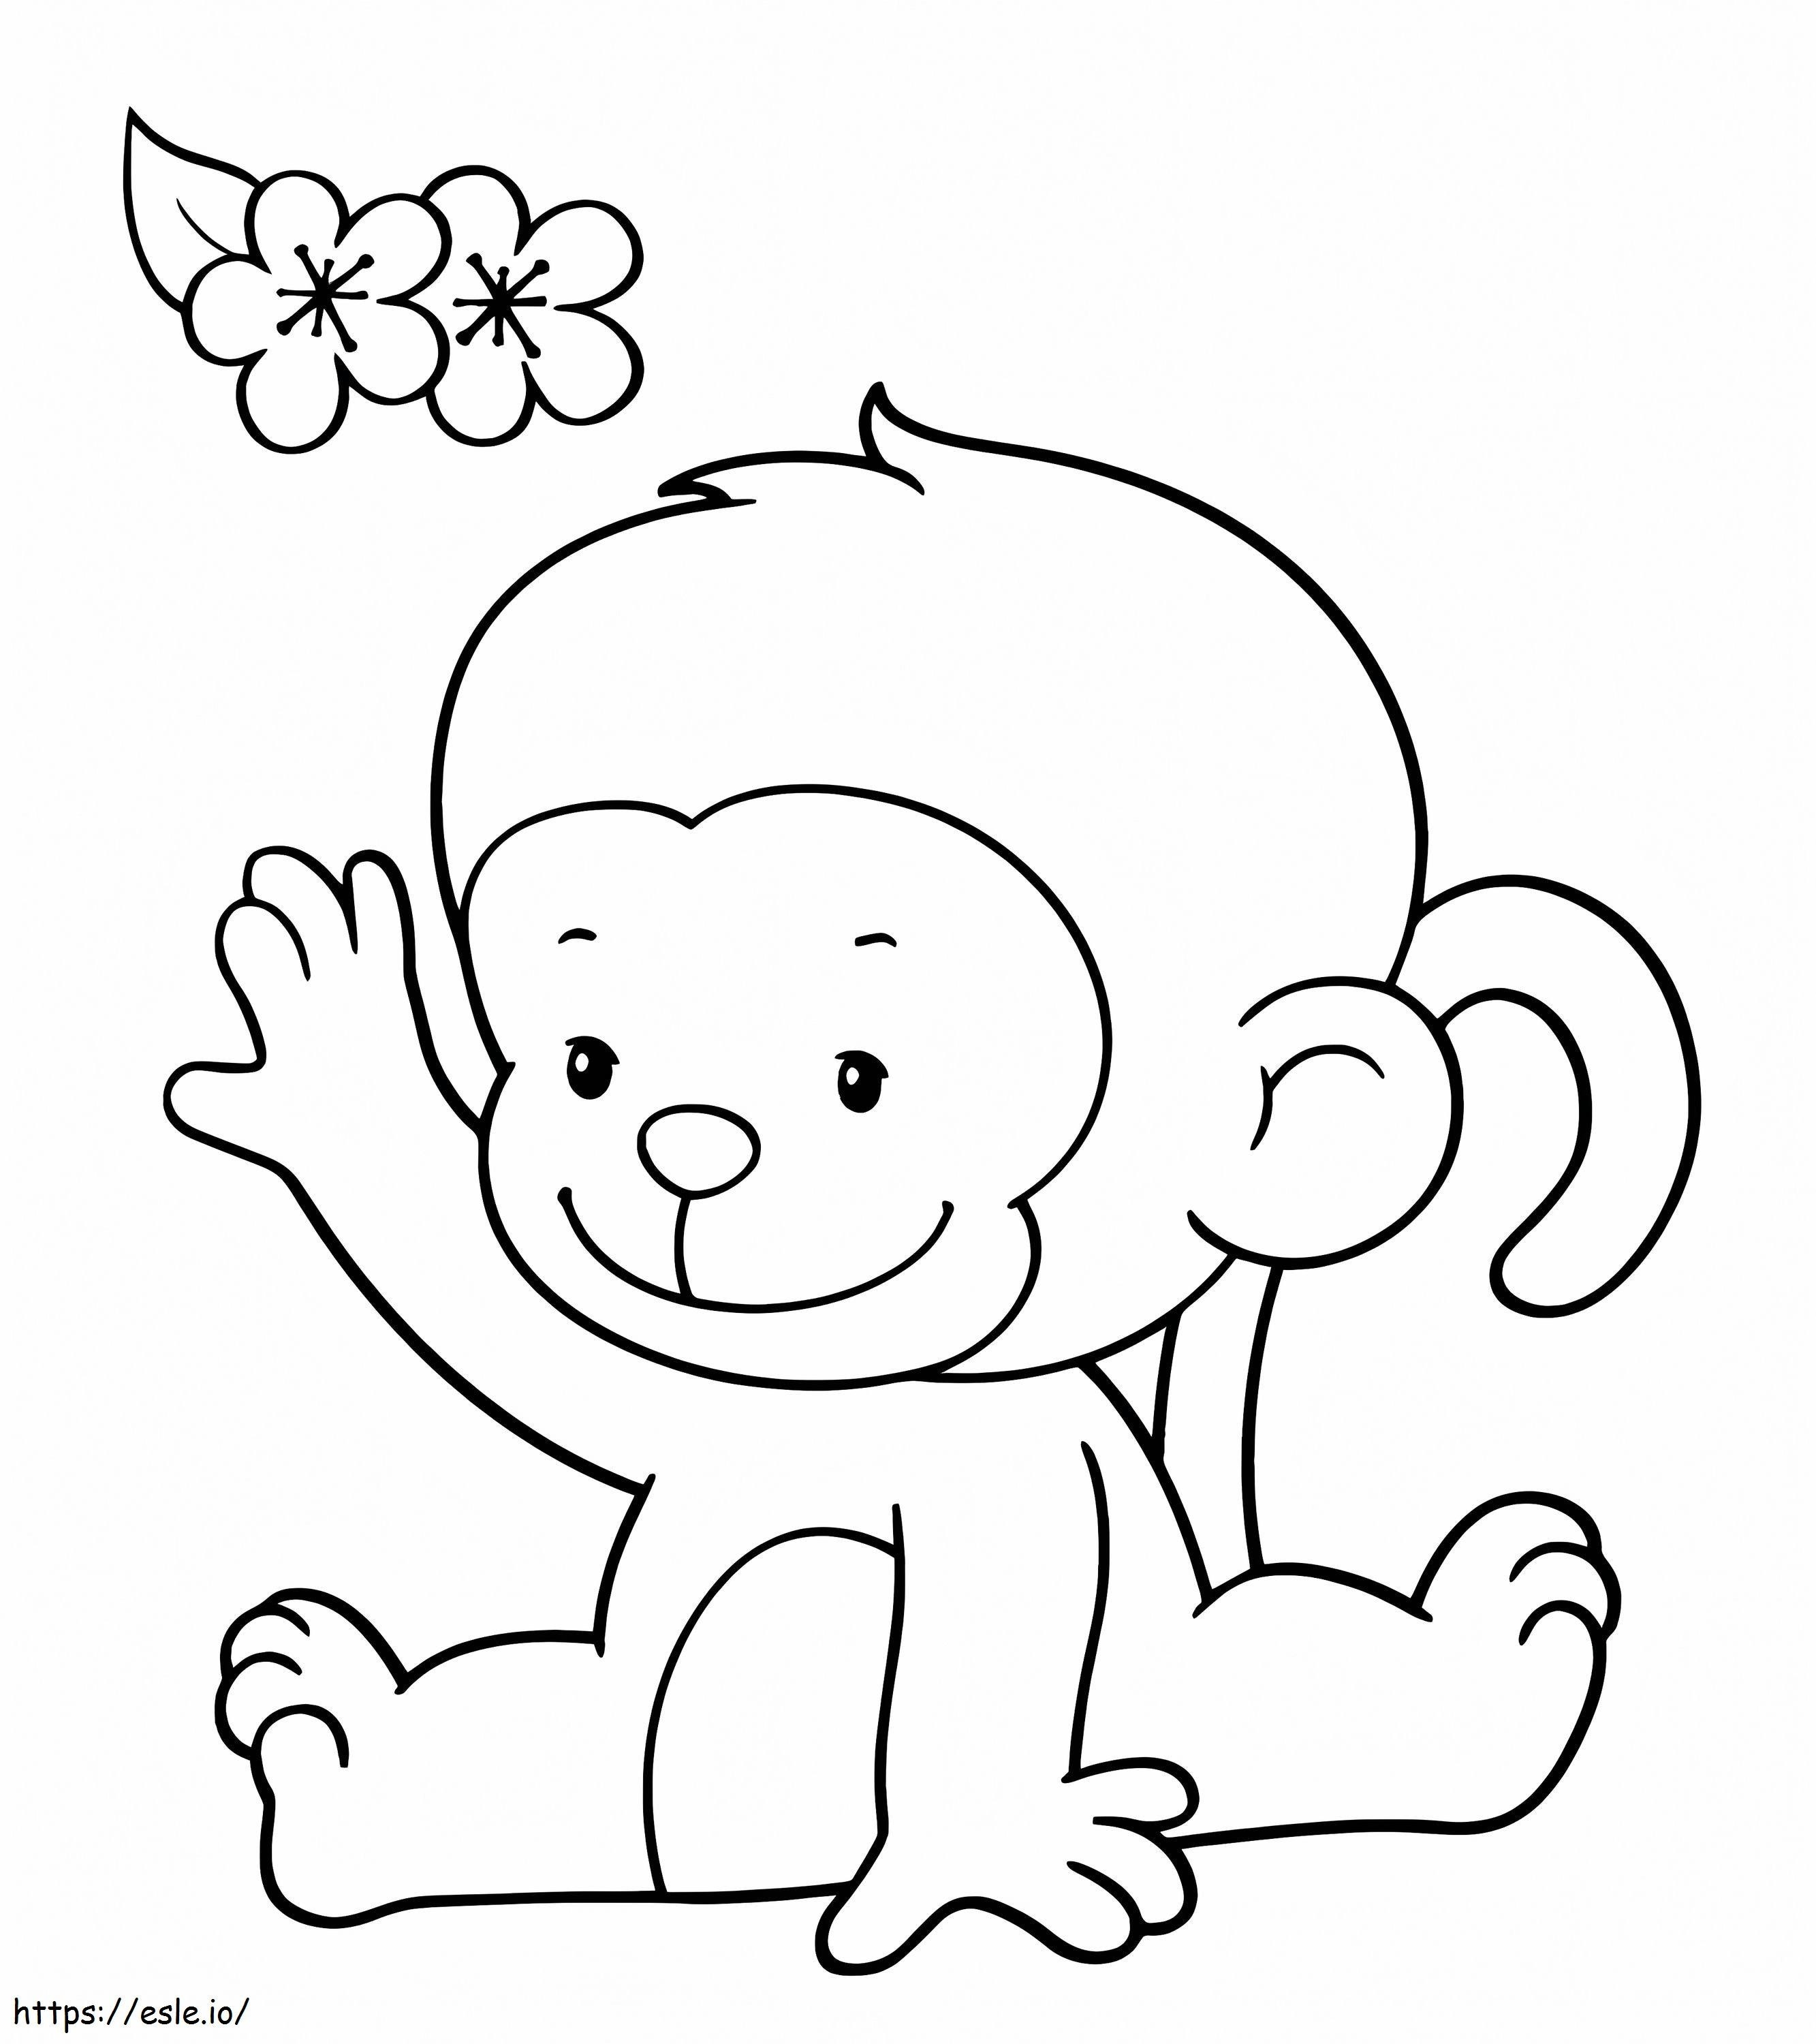 Affe und Blume ausmalbilder